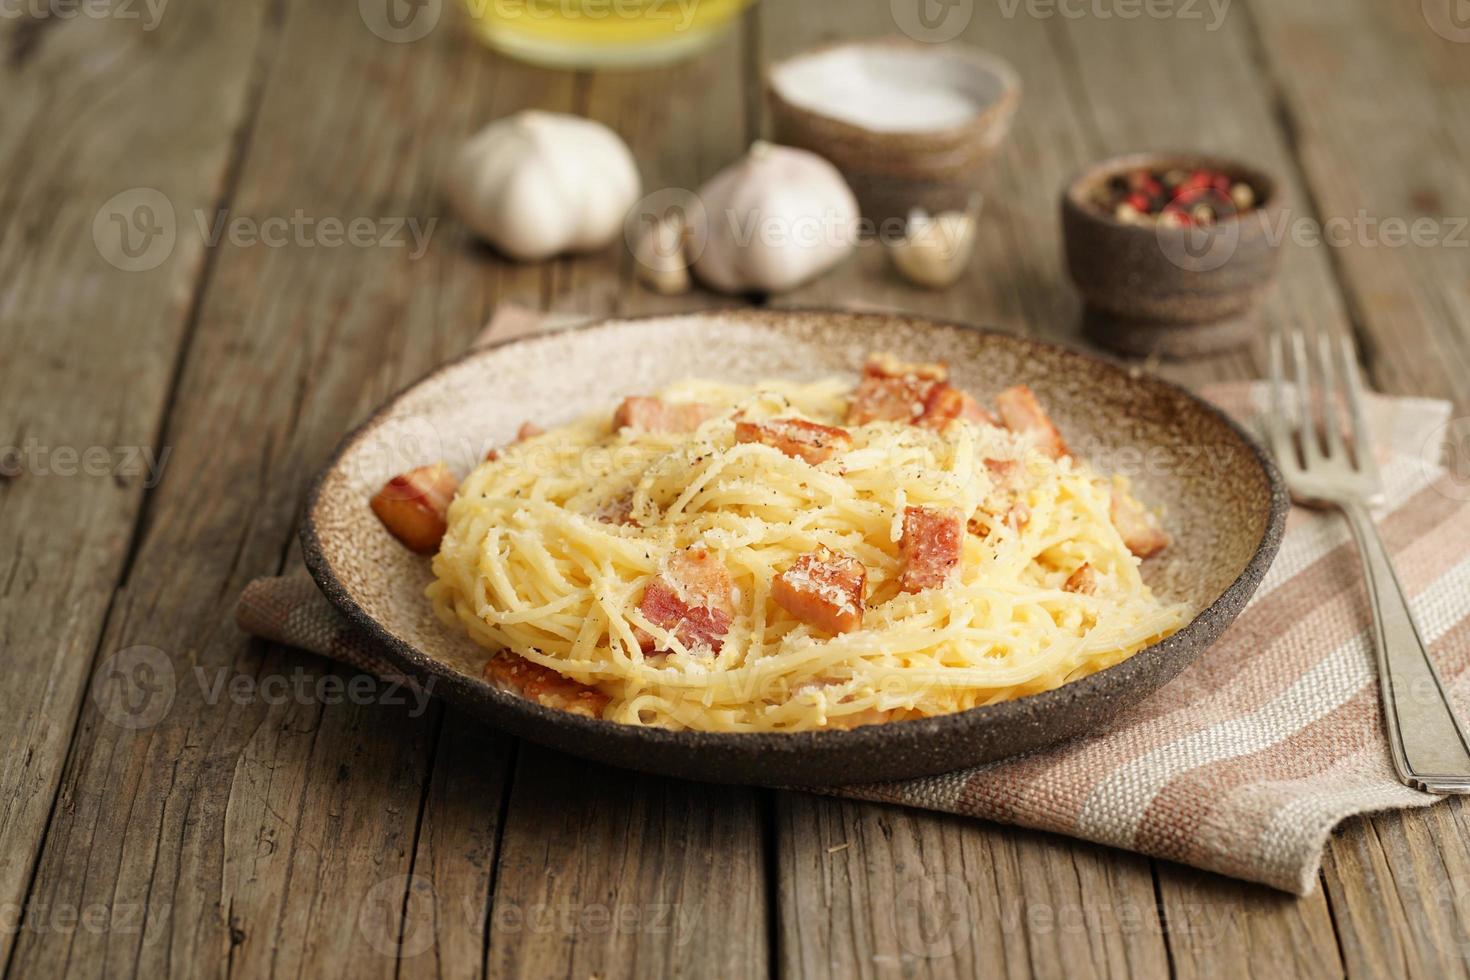 pasta carbonara. espaguetis con tocino, huevo, queso parmesano. cocina tradicional italiana. foto